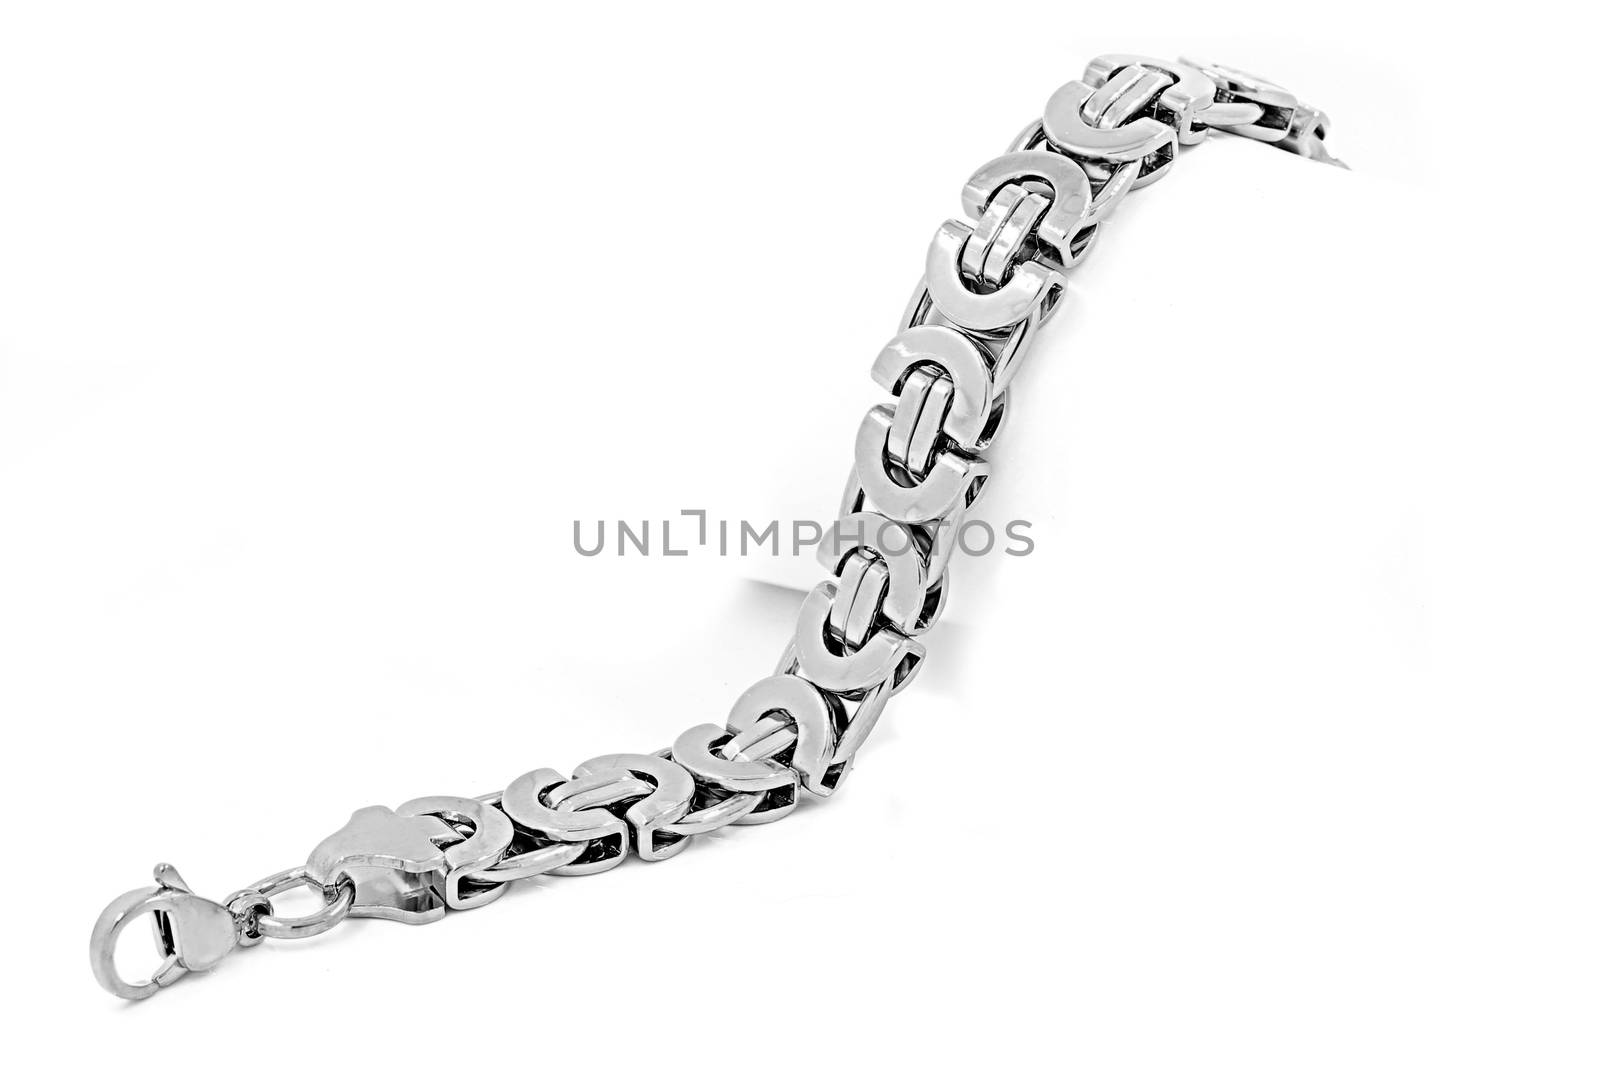 Stainless steel bracelet by Jandix